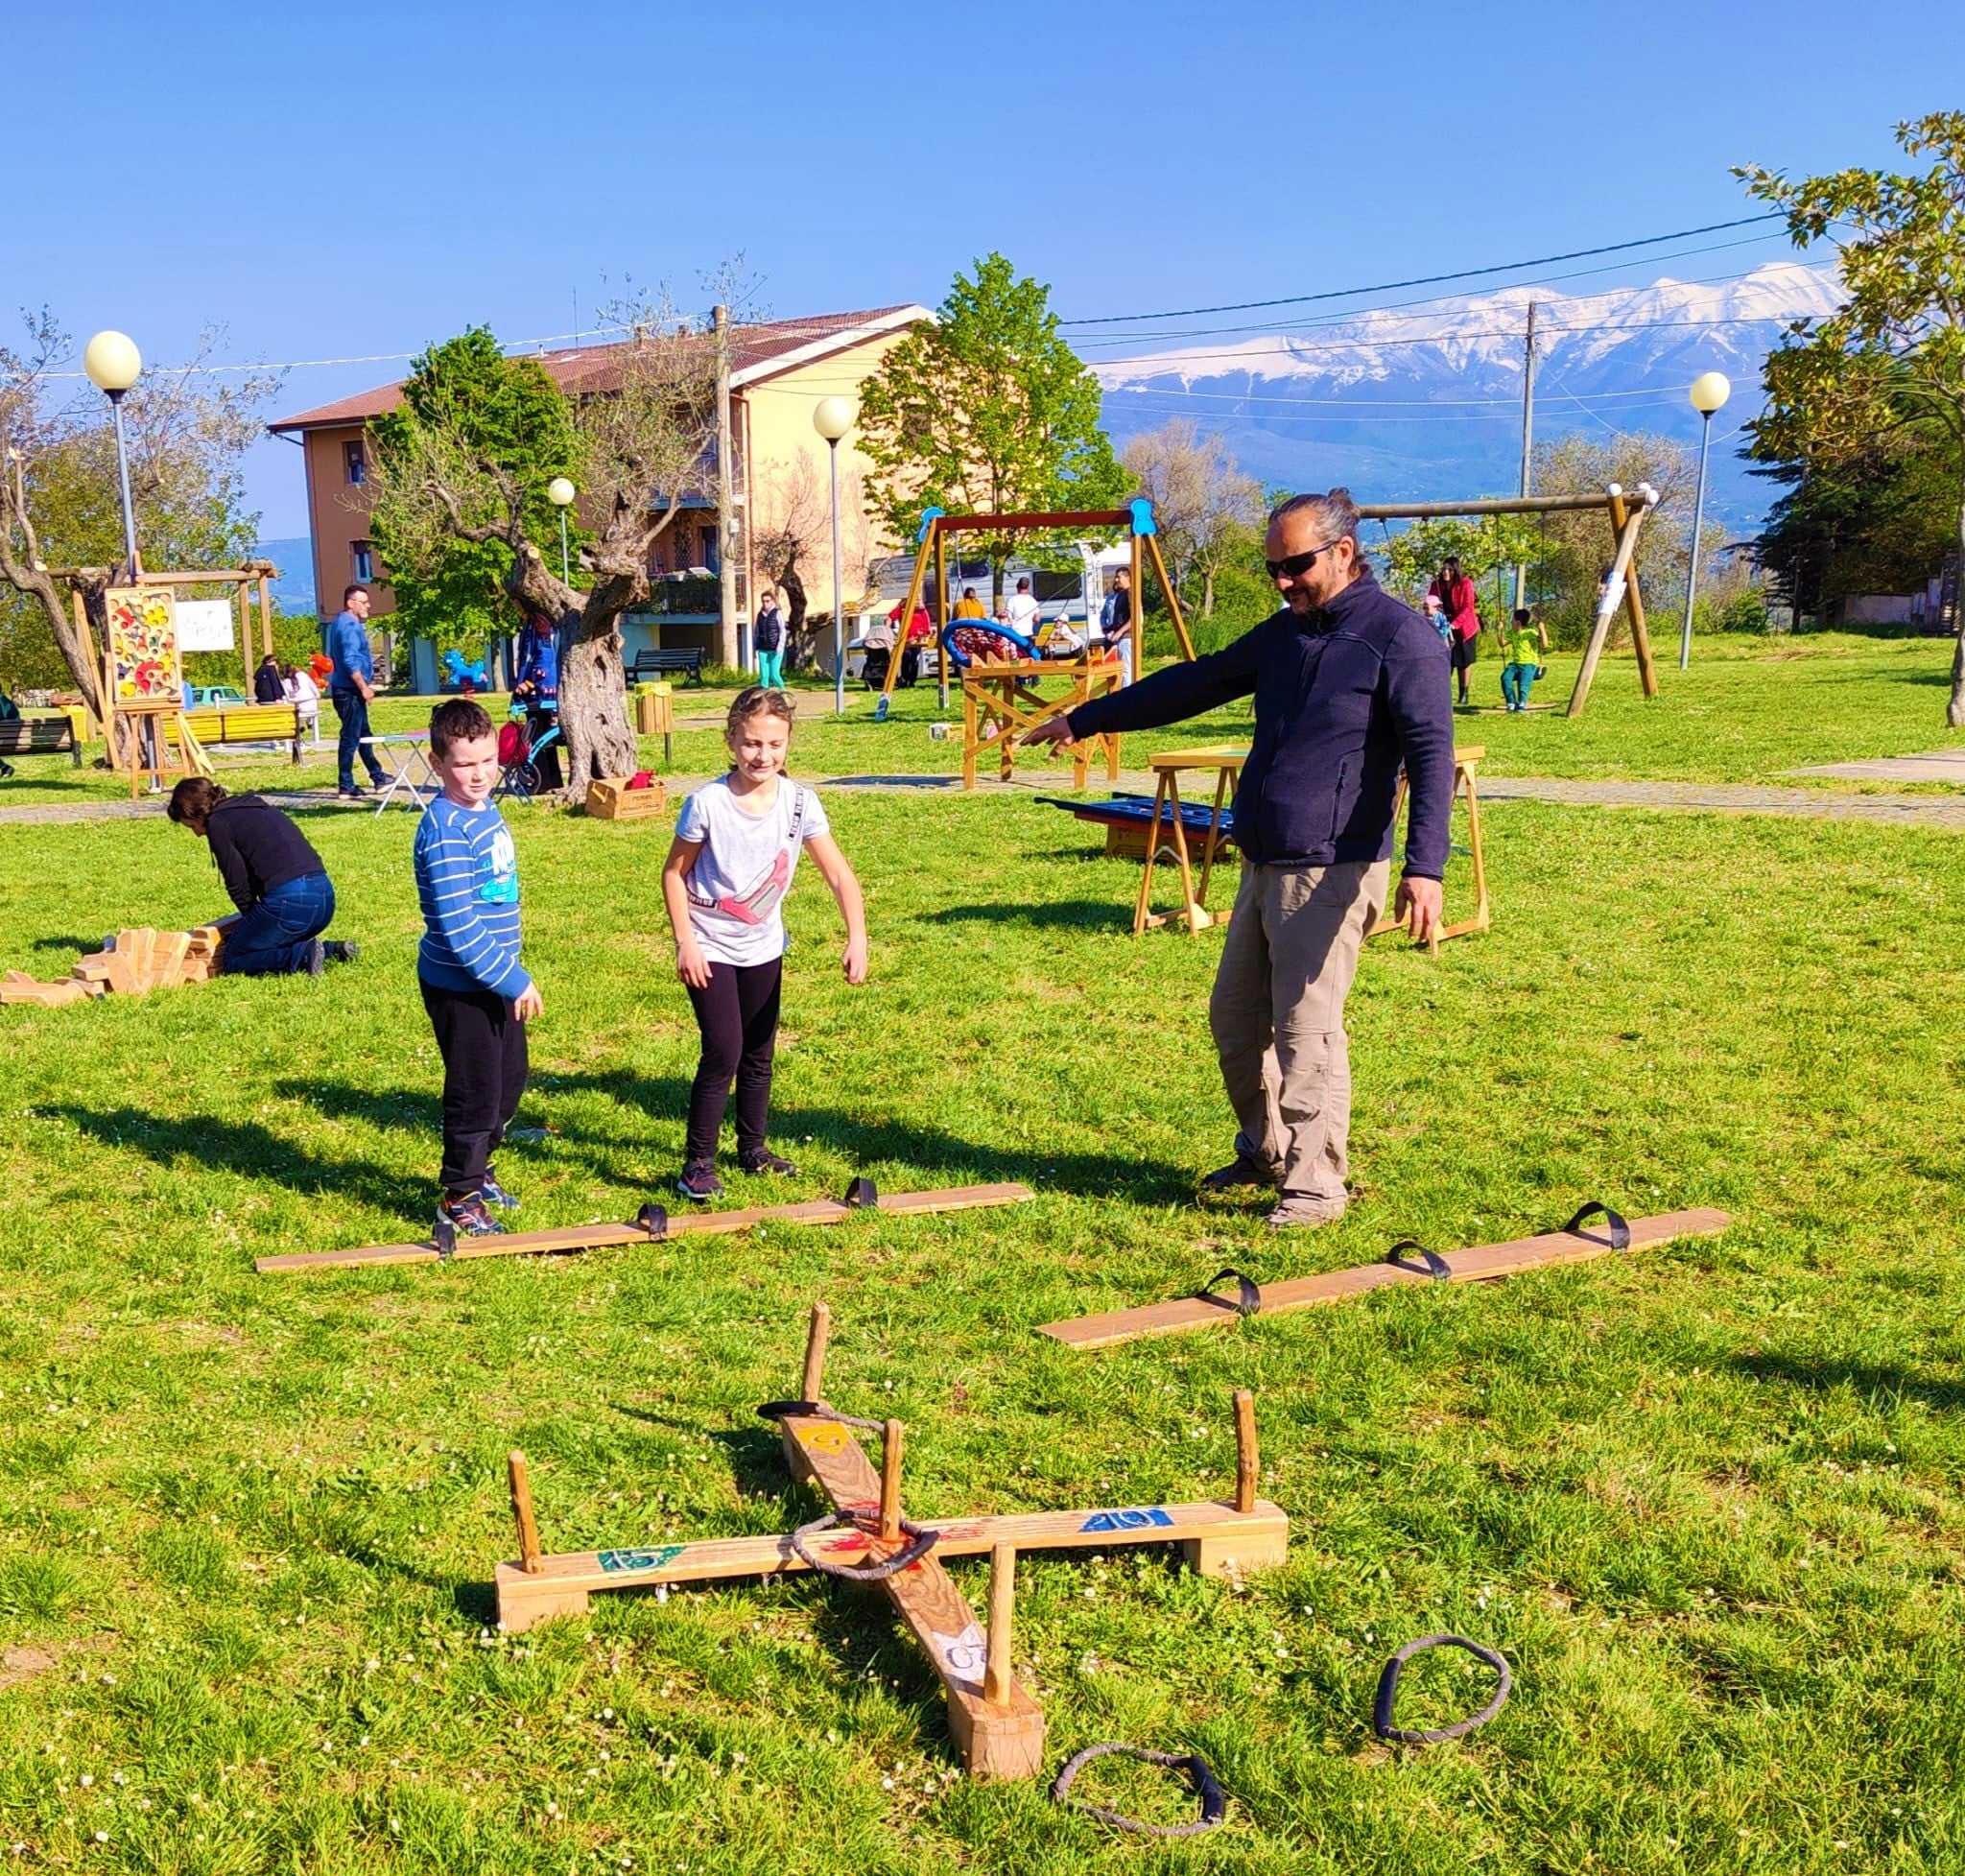 Il Ludobus questa volta ha fatto tappa a  Civitaquana e Catignano portando tanti tesori! Stupendi giochi in legno, di equilibrio e di abilità, con cui mettersi alla prova per divertirsi in compagnia e laboratori creativi!